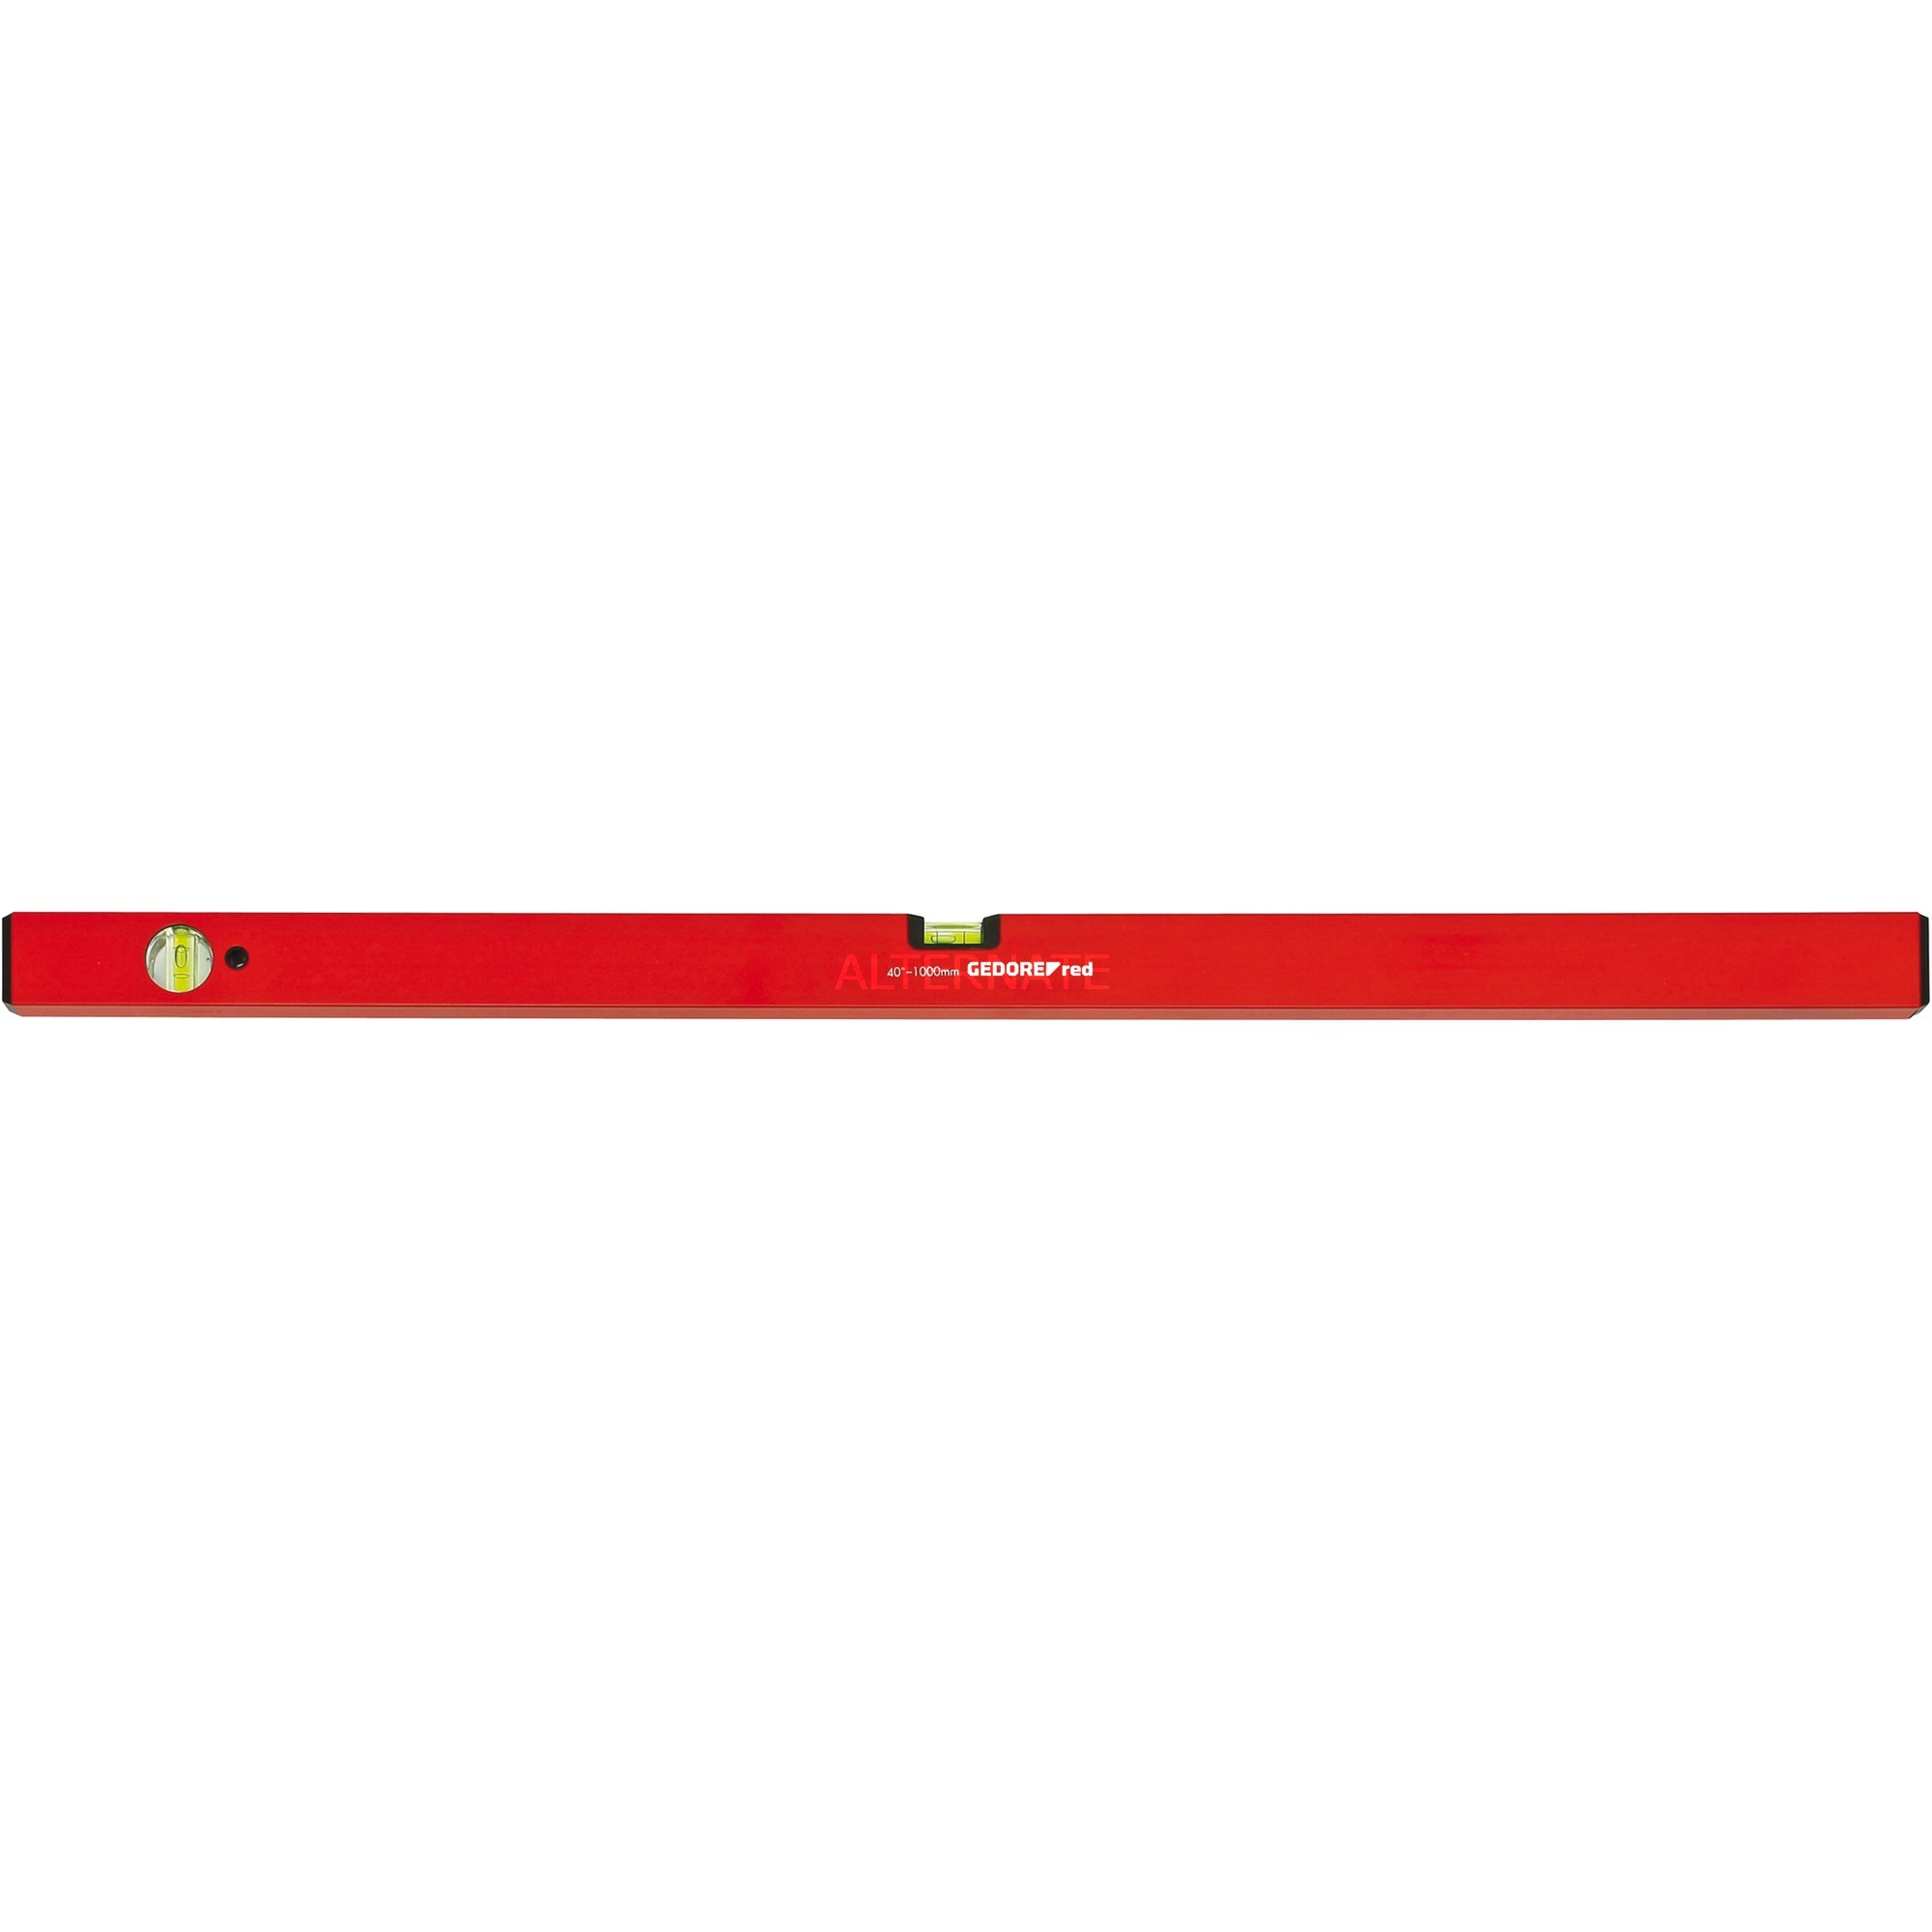 Image of Alternate - Red Wasserwaage Alu, 100cm, 2 Libellen online einkaufen bei Alternate